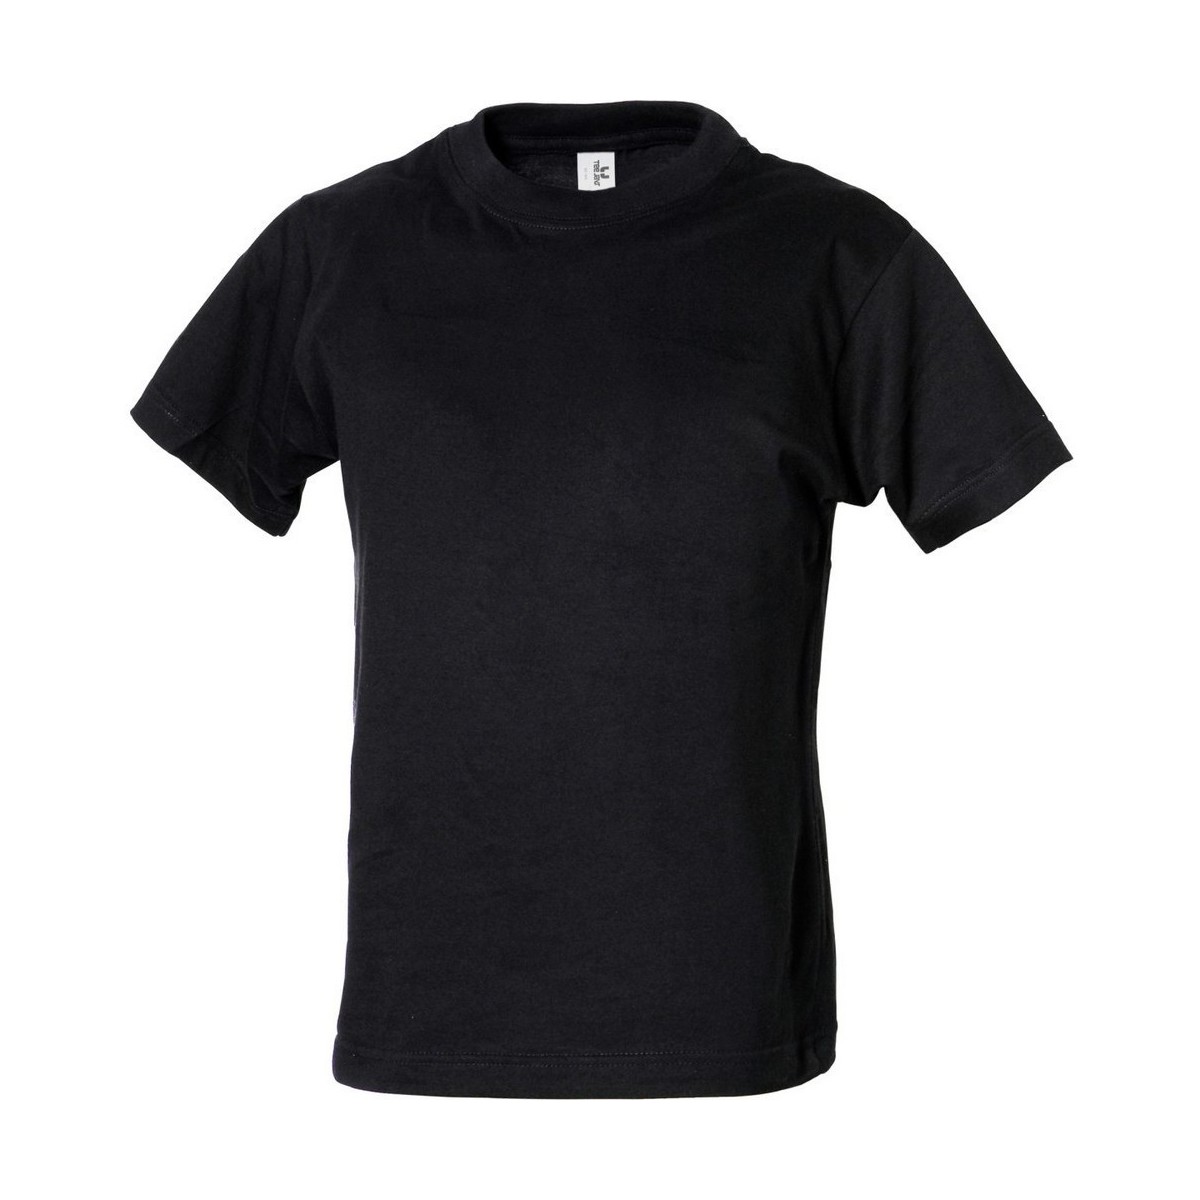 Vêtements Garçon T-shirts lange-effect manches courtes Tee Jays TJ1100B Noir